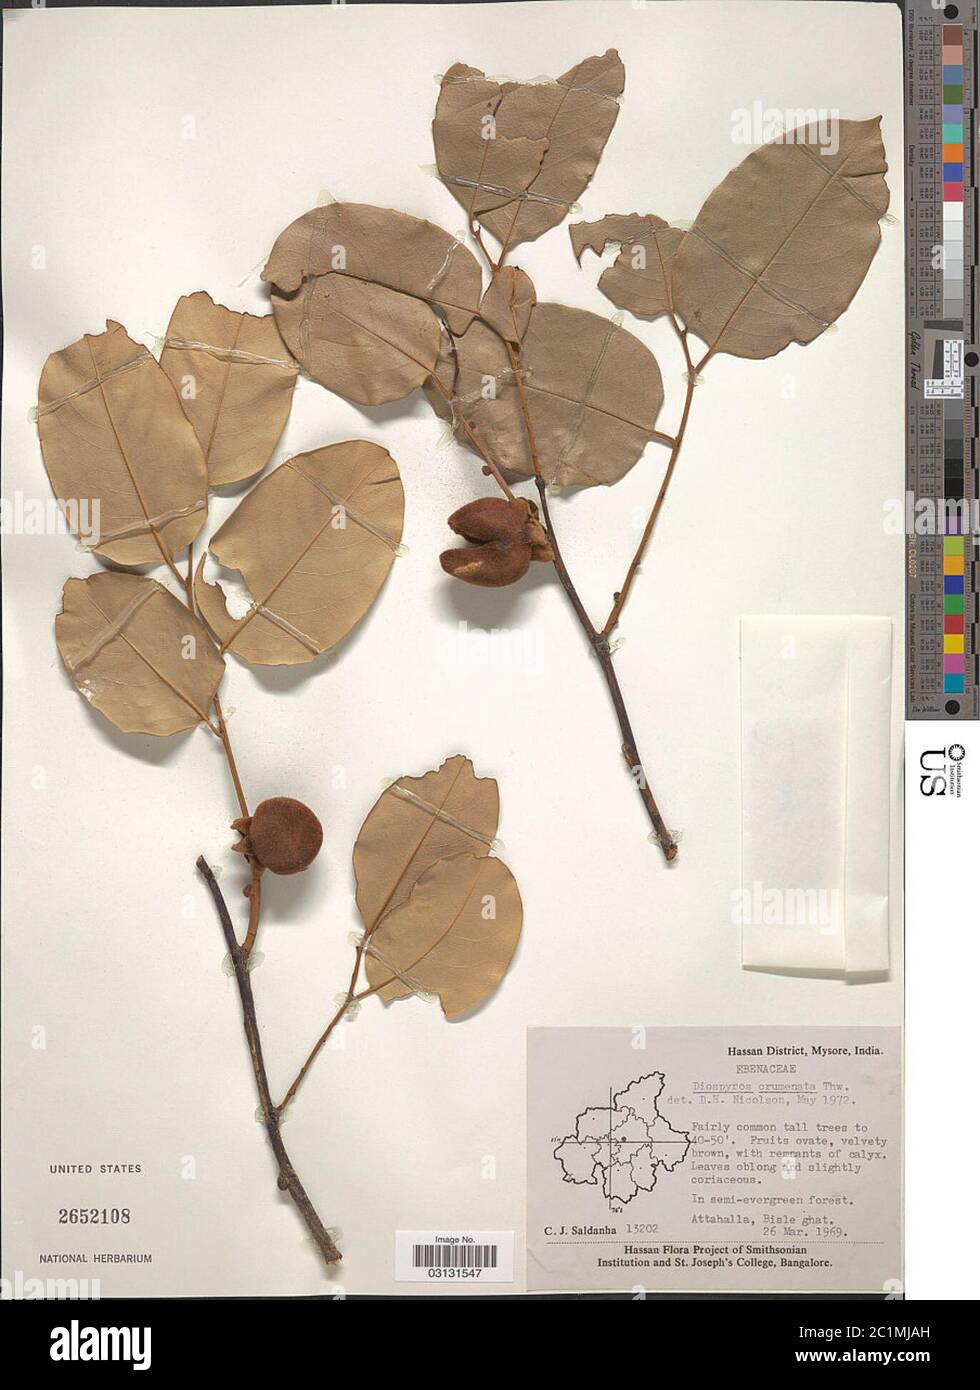 Diospyros crumenata Thwaites Diospyros crumenata Thwaites. Stock Photo